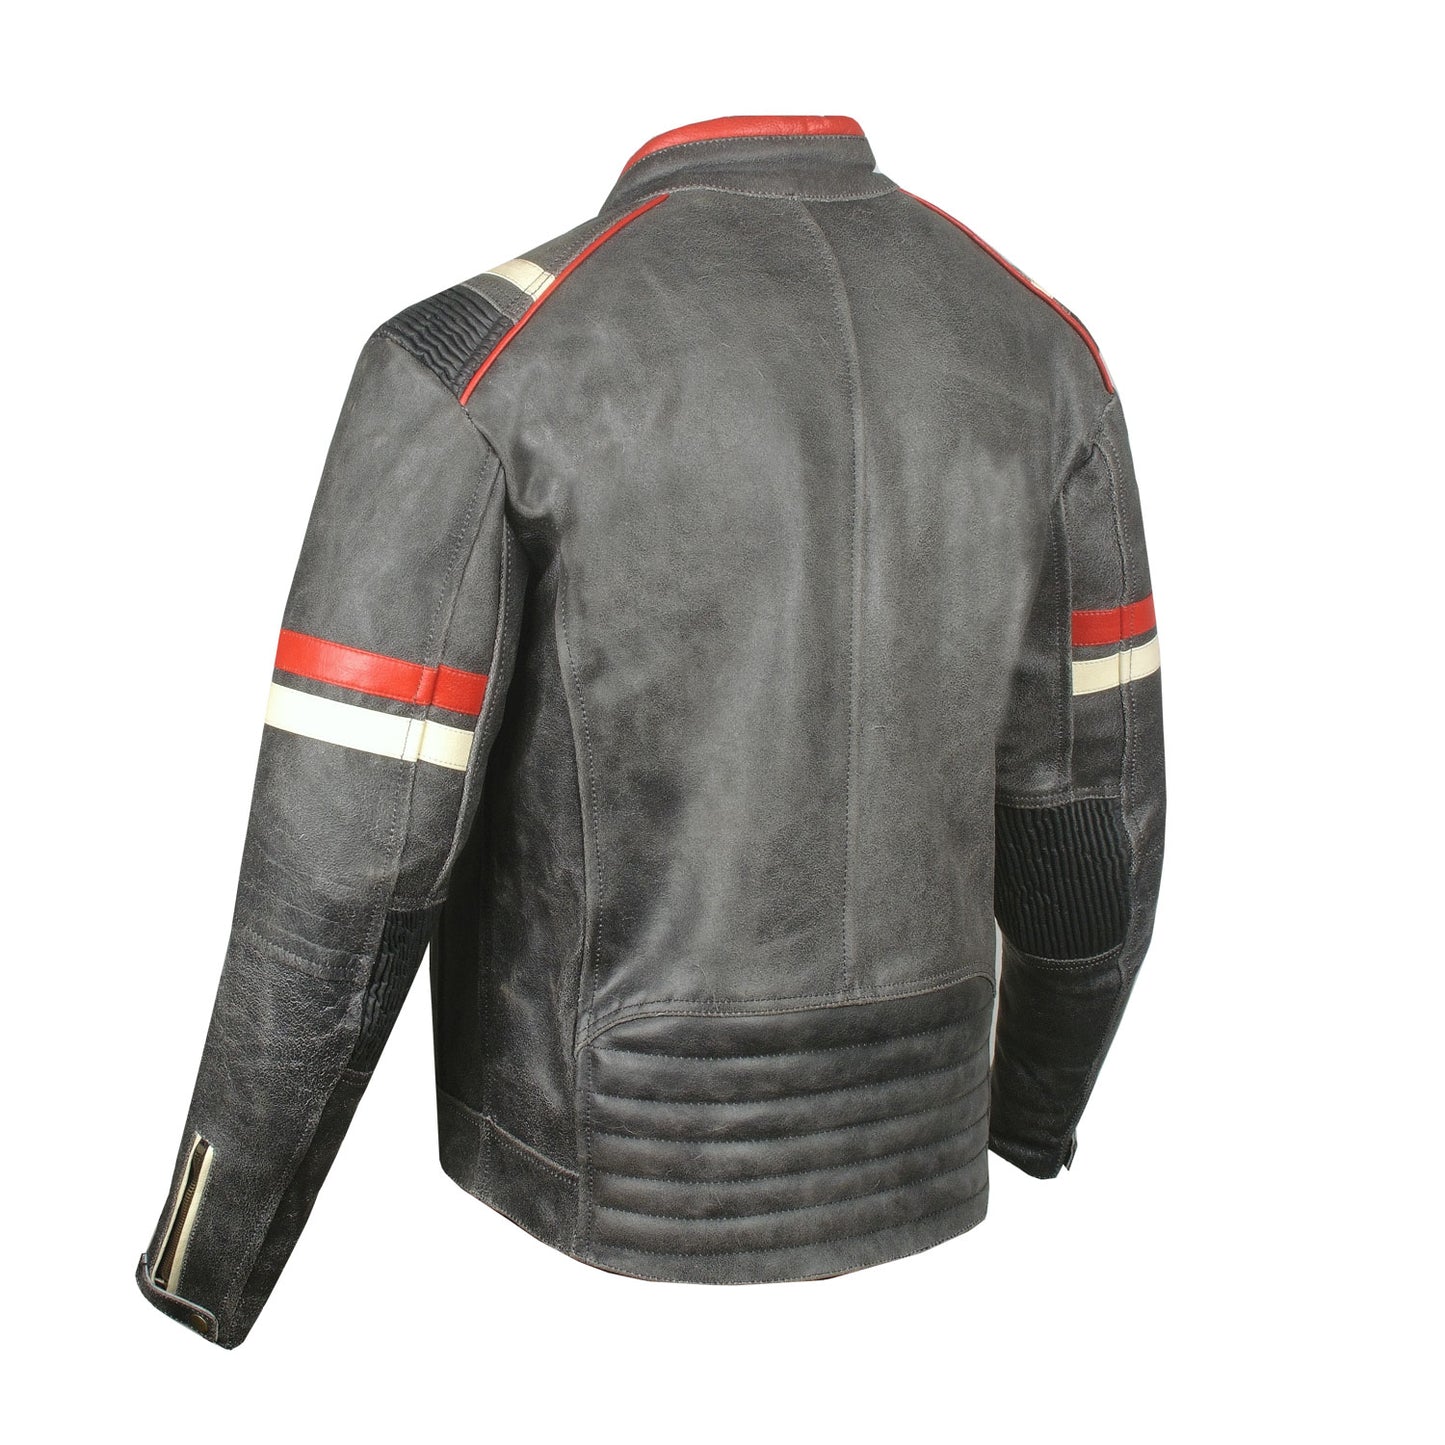 Men's Vintage Cafe Racer Motorcycle Distressed Leather Armor Biker Jacket